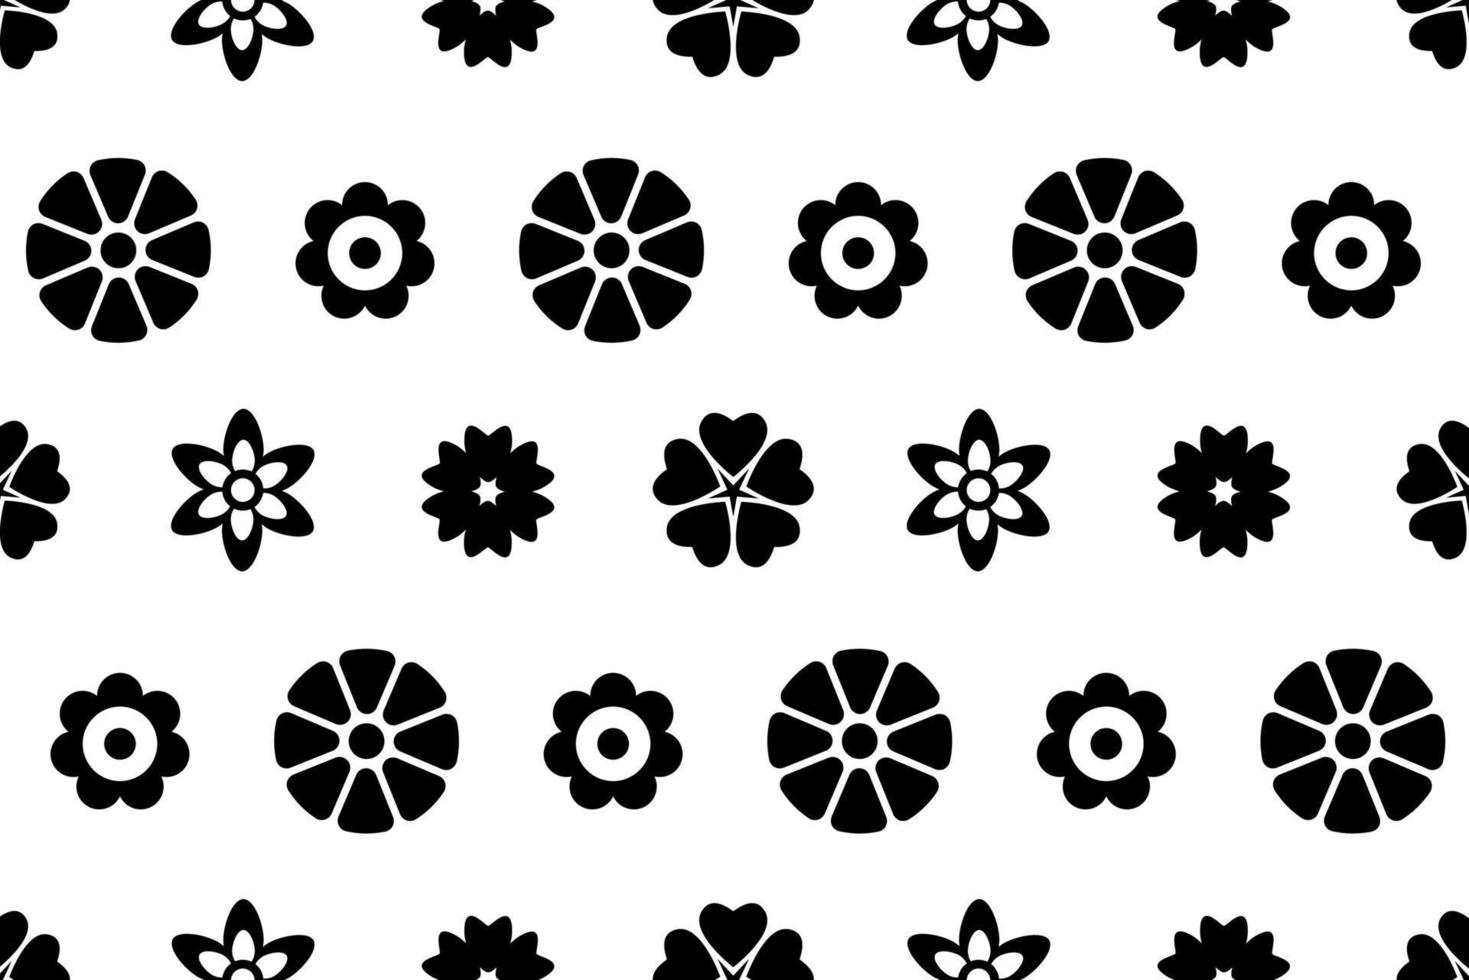 motivo floreale piatto. modello ripetuto di fiori in bianco e nero. modello creativo vettoriale per avvolgimento, tessile, rivestimento, stampa e altri progetti di design.